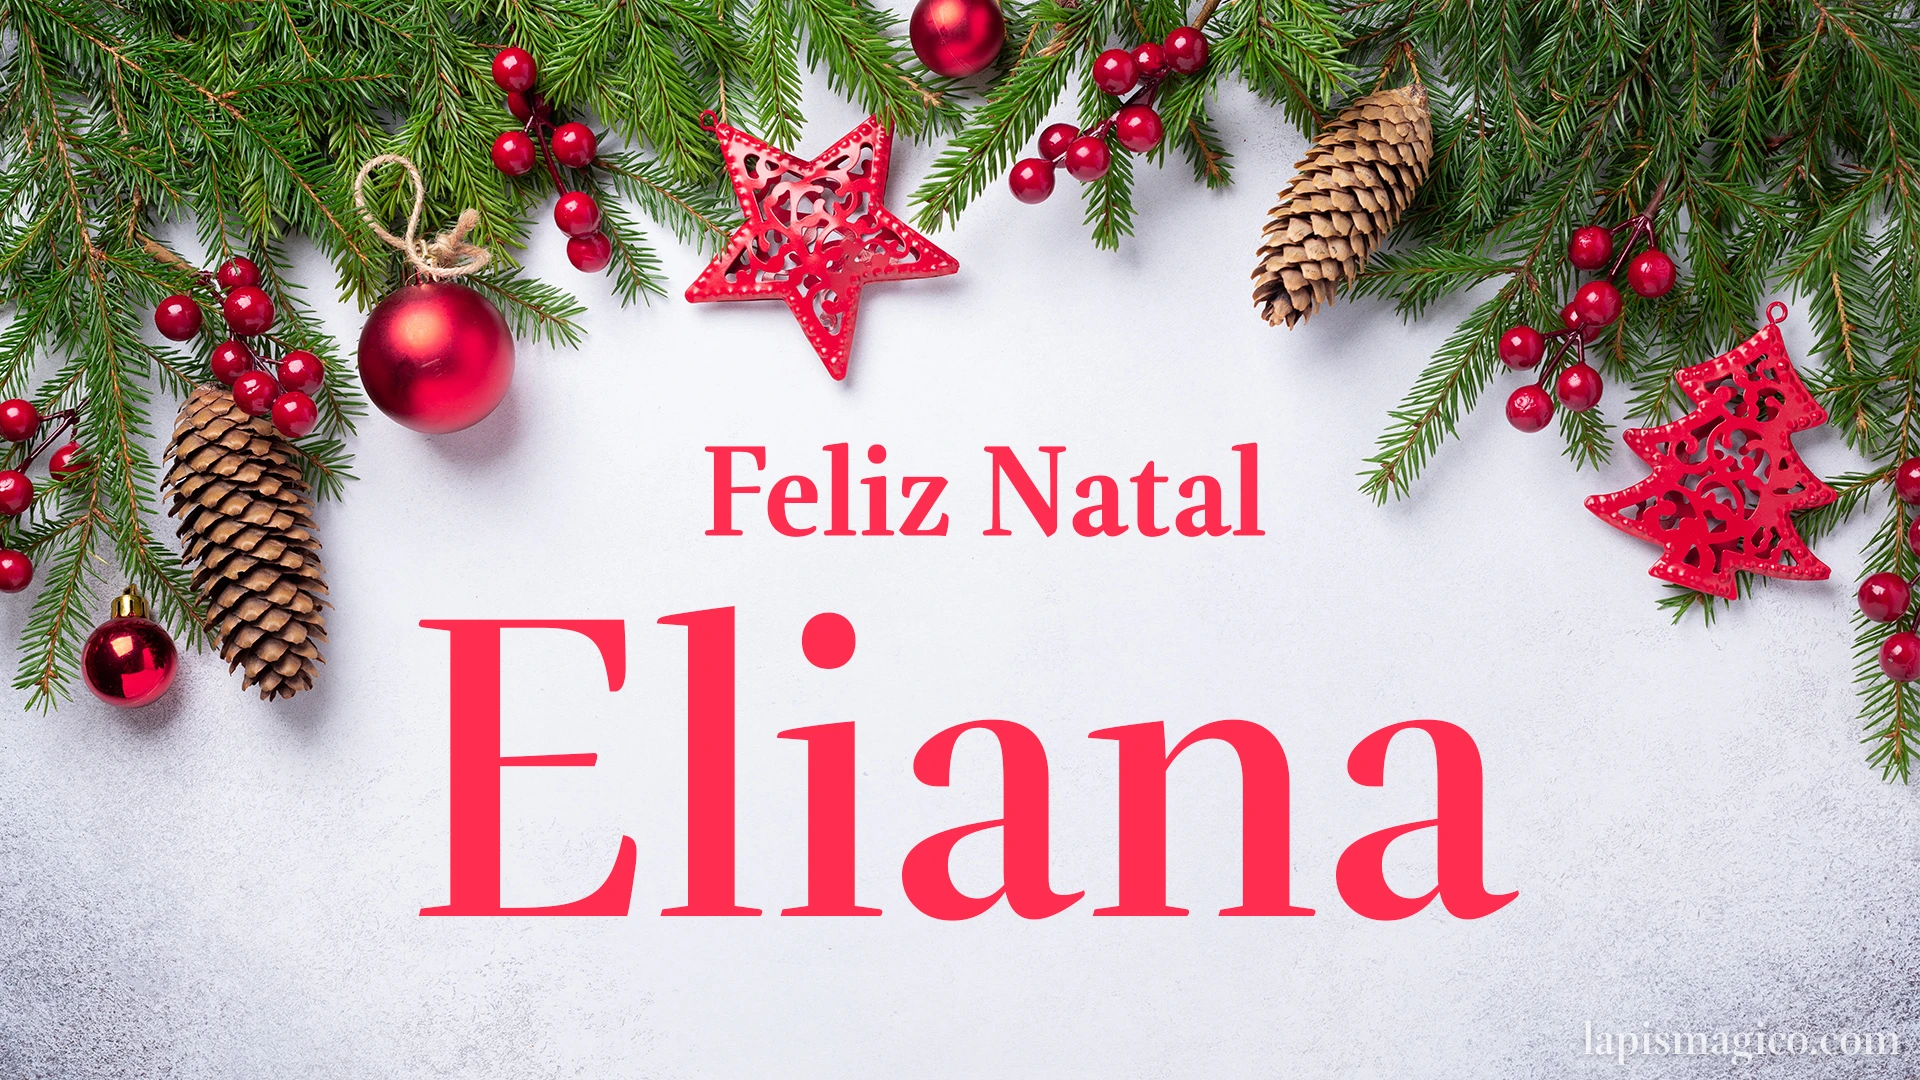 Oh Eliana, cinco postais de Feliz Natal Postal com o teu nome